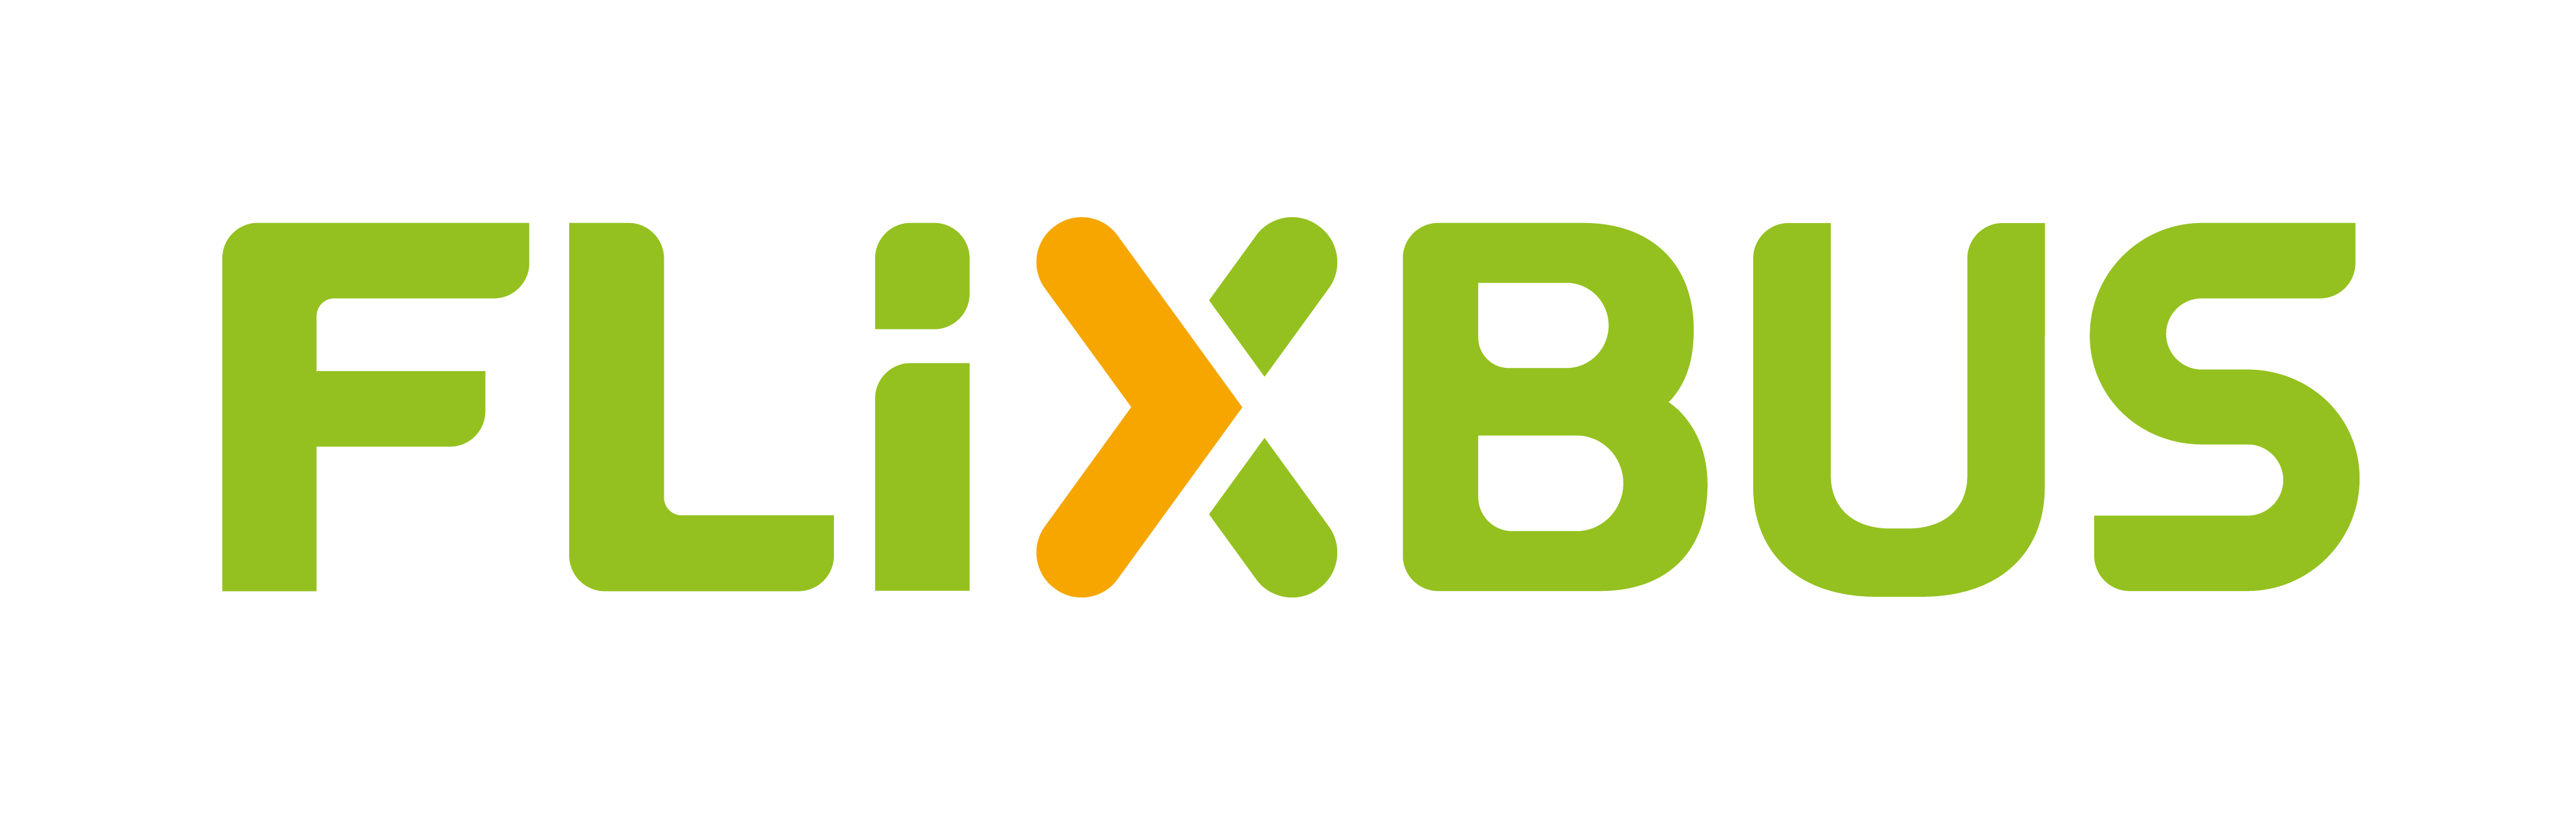 flixbus_logo_cmyk_green-1